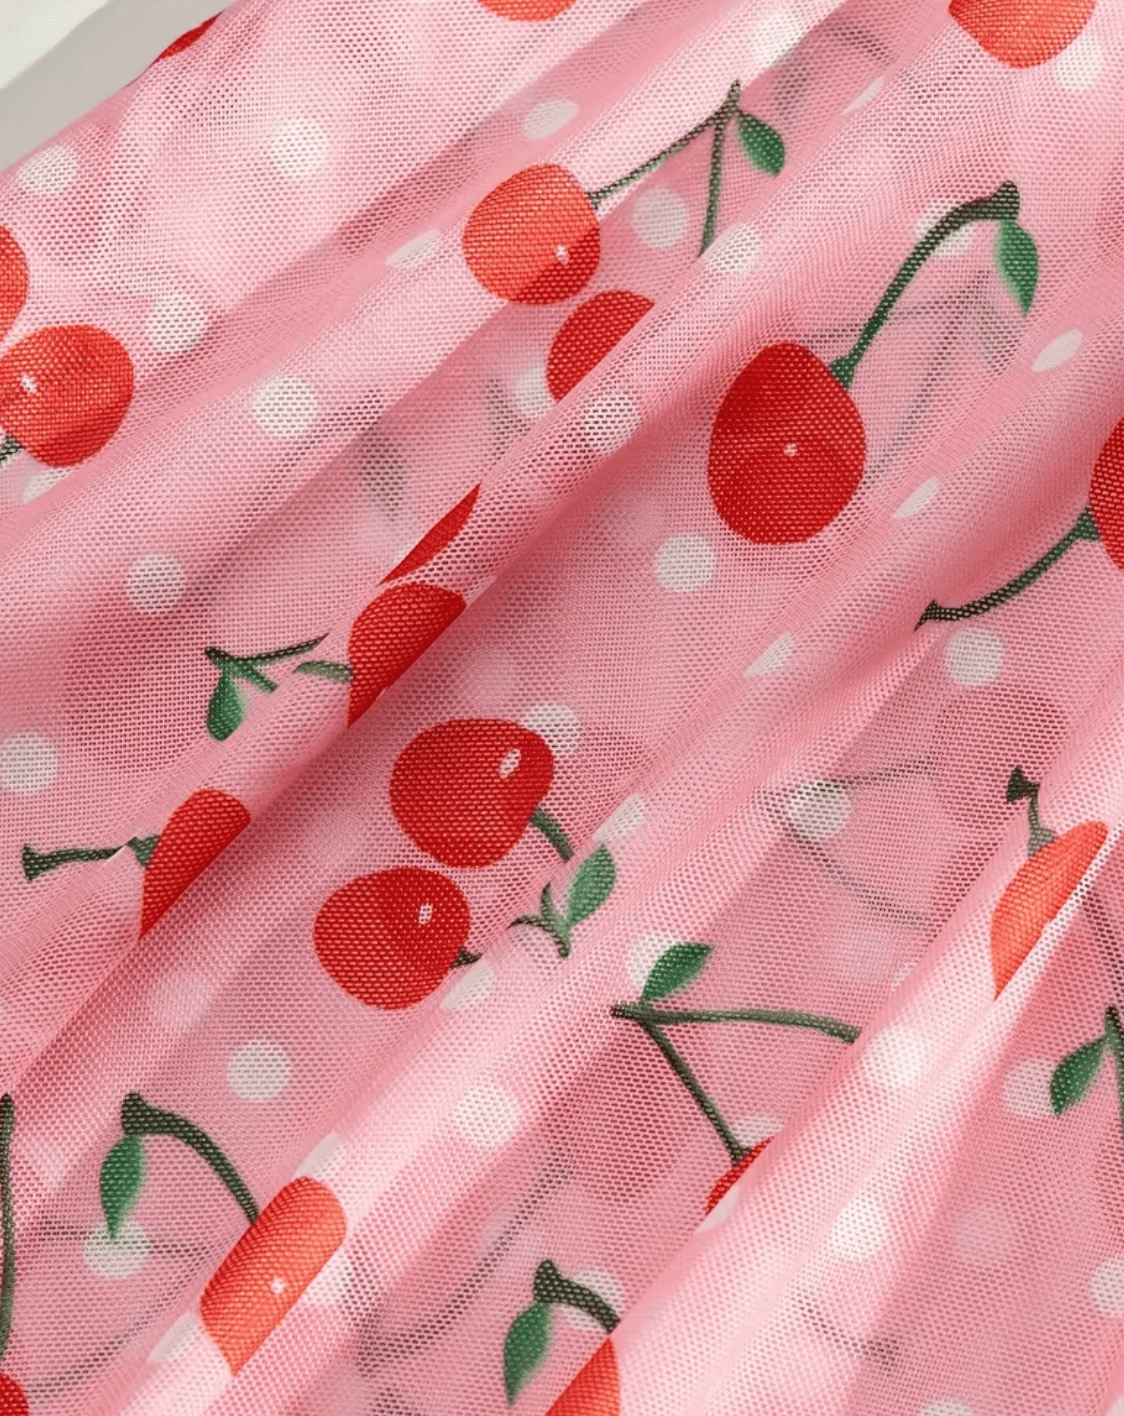 cherry lace slip lingerie accessories